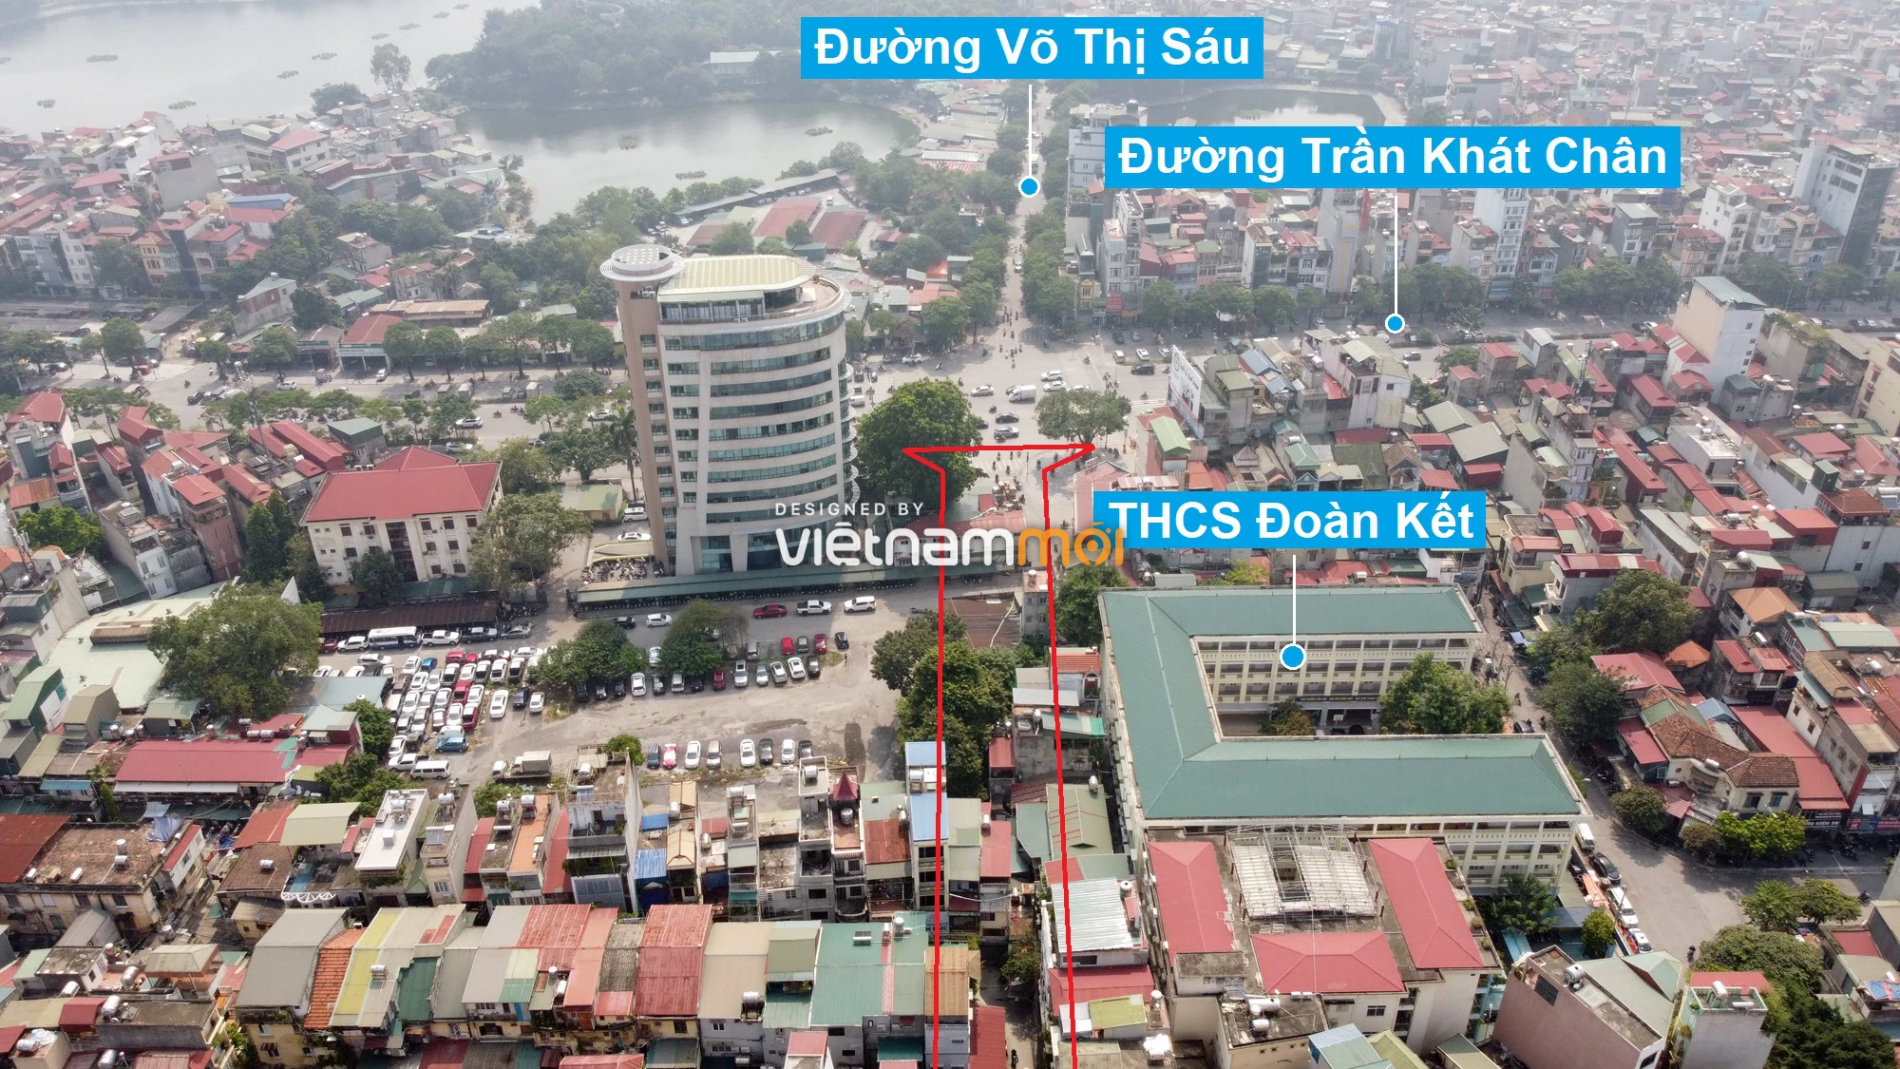 Những khu đất sắp thu hồi để mở đường ở quận Hai Bà Trưng, Hà Nội (phần 1) - Ảnh 9.